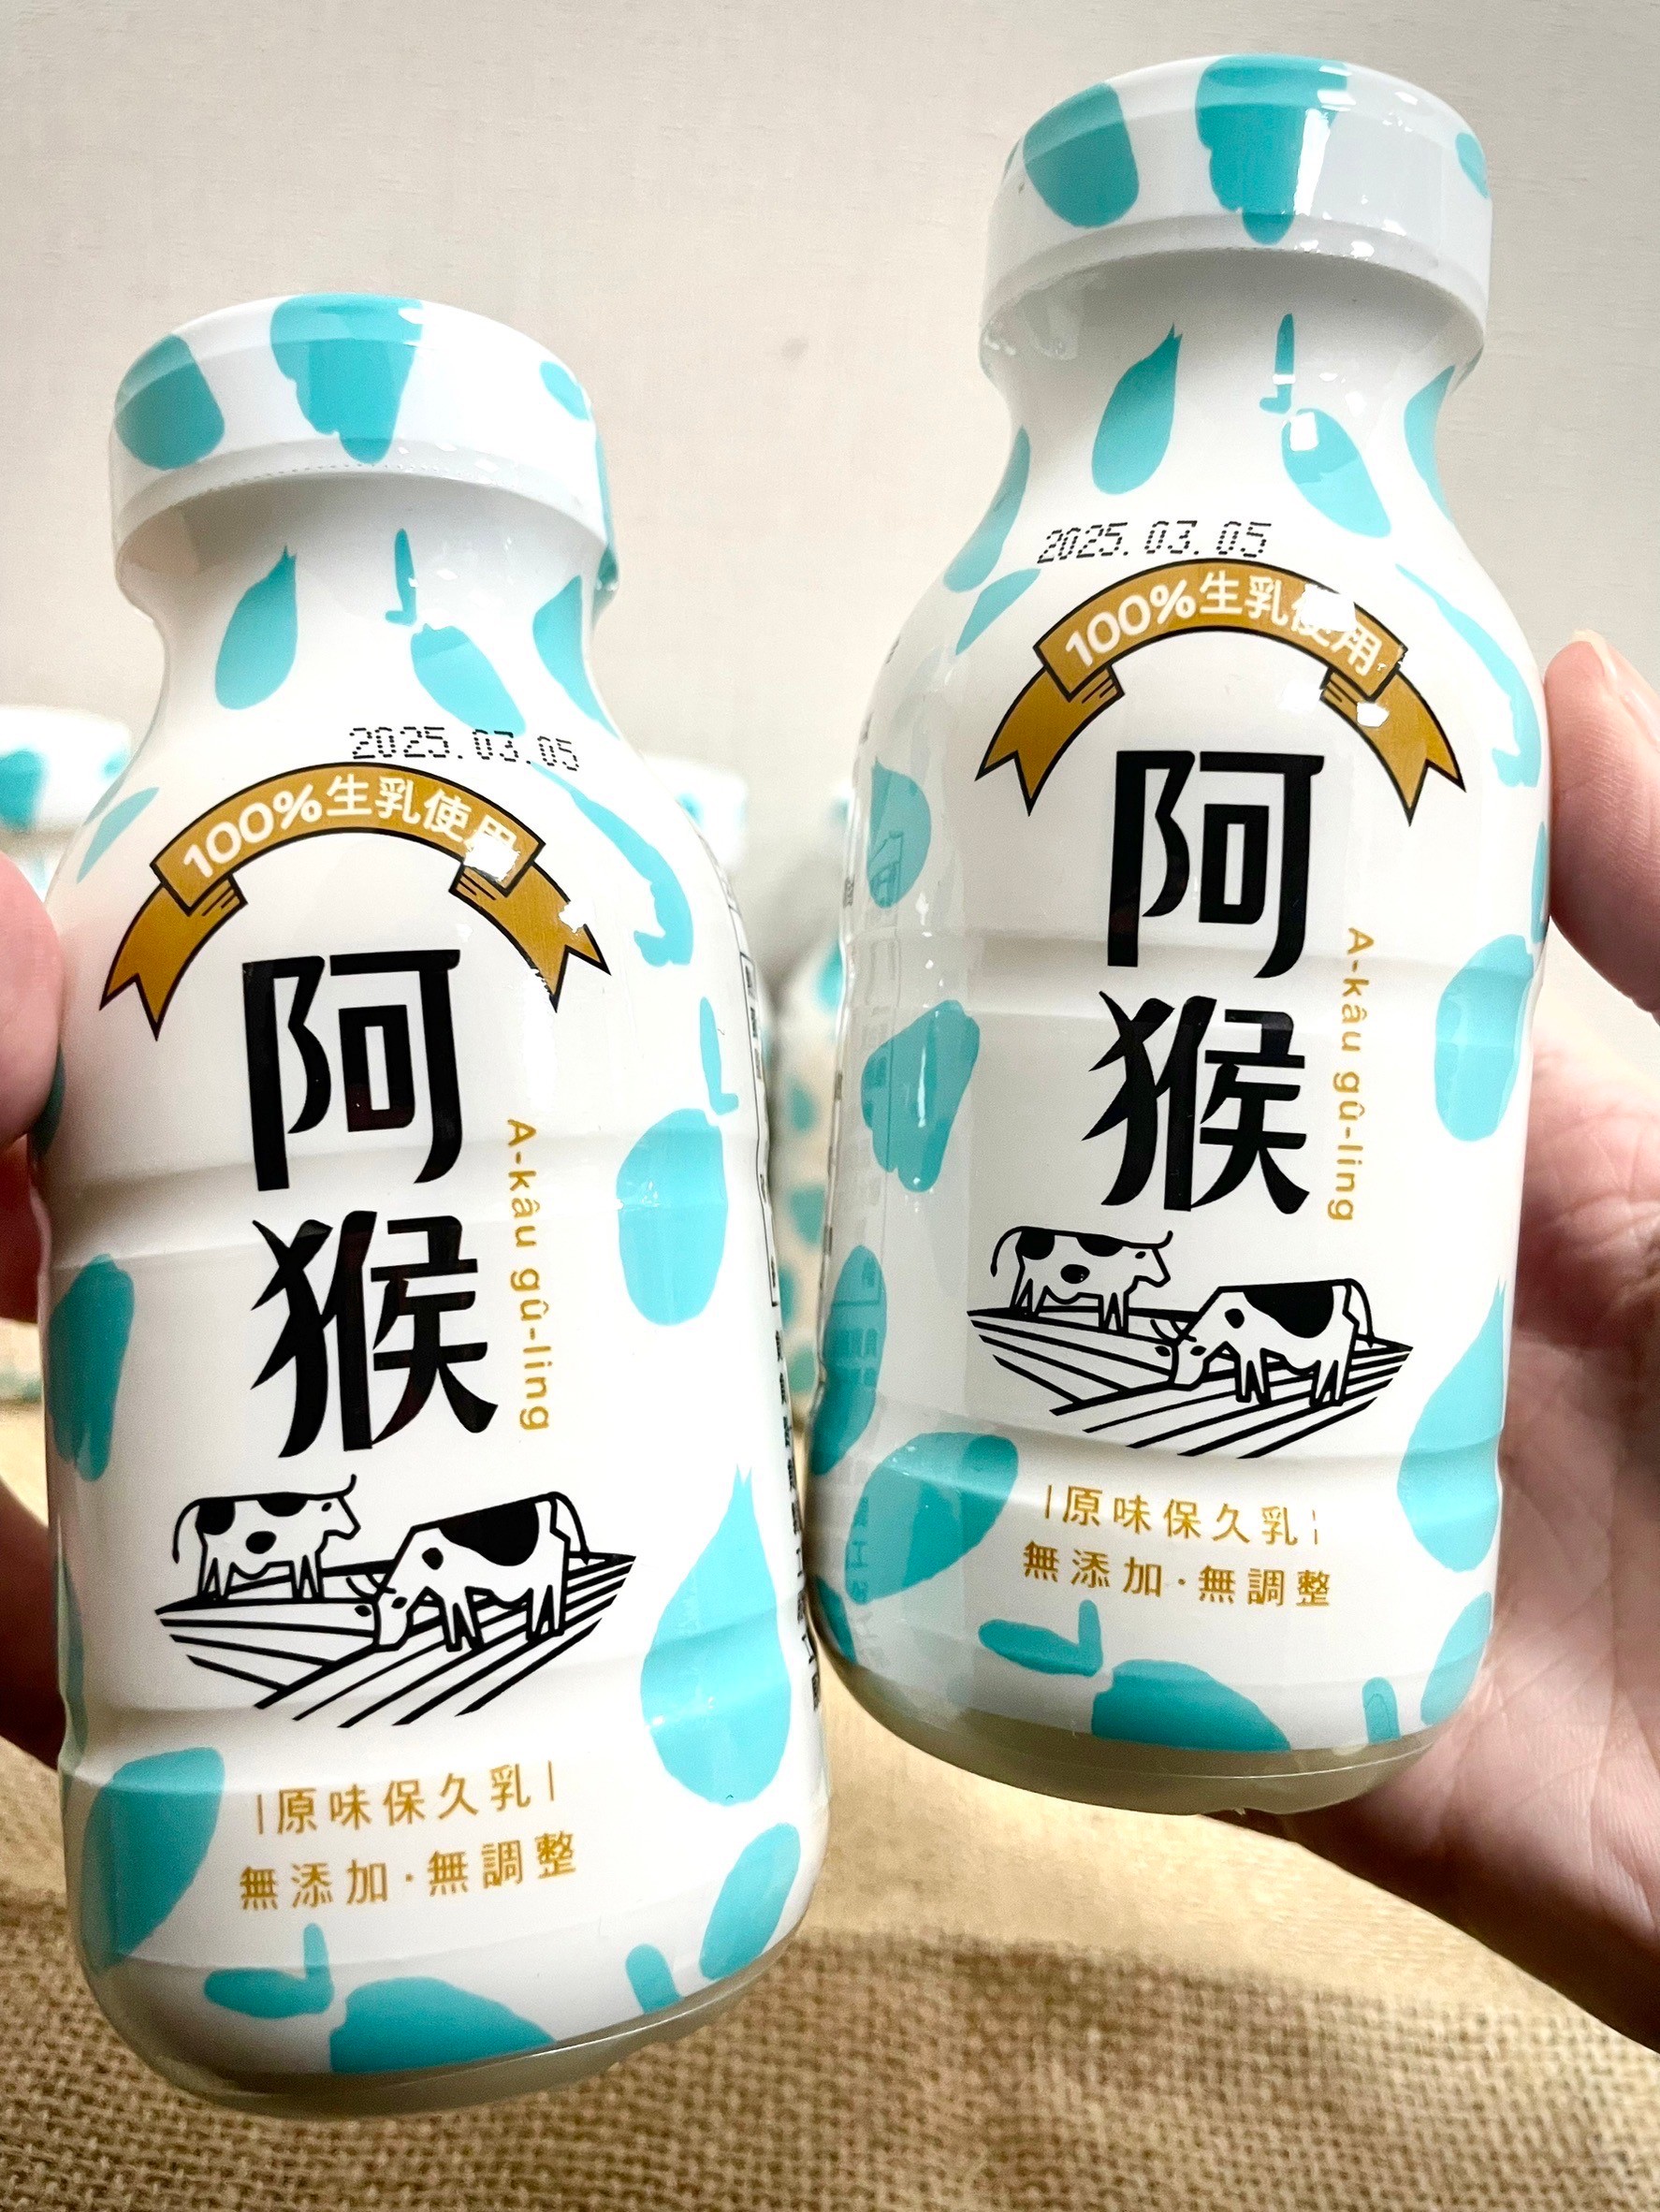 屏东县府辅导品牌阿猴鲜乳，上市10多月热销94万瓶，今起推出保久乳系列。图／屏东县政府提供